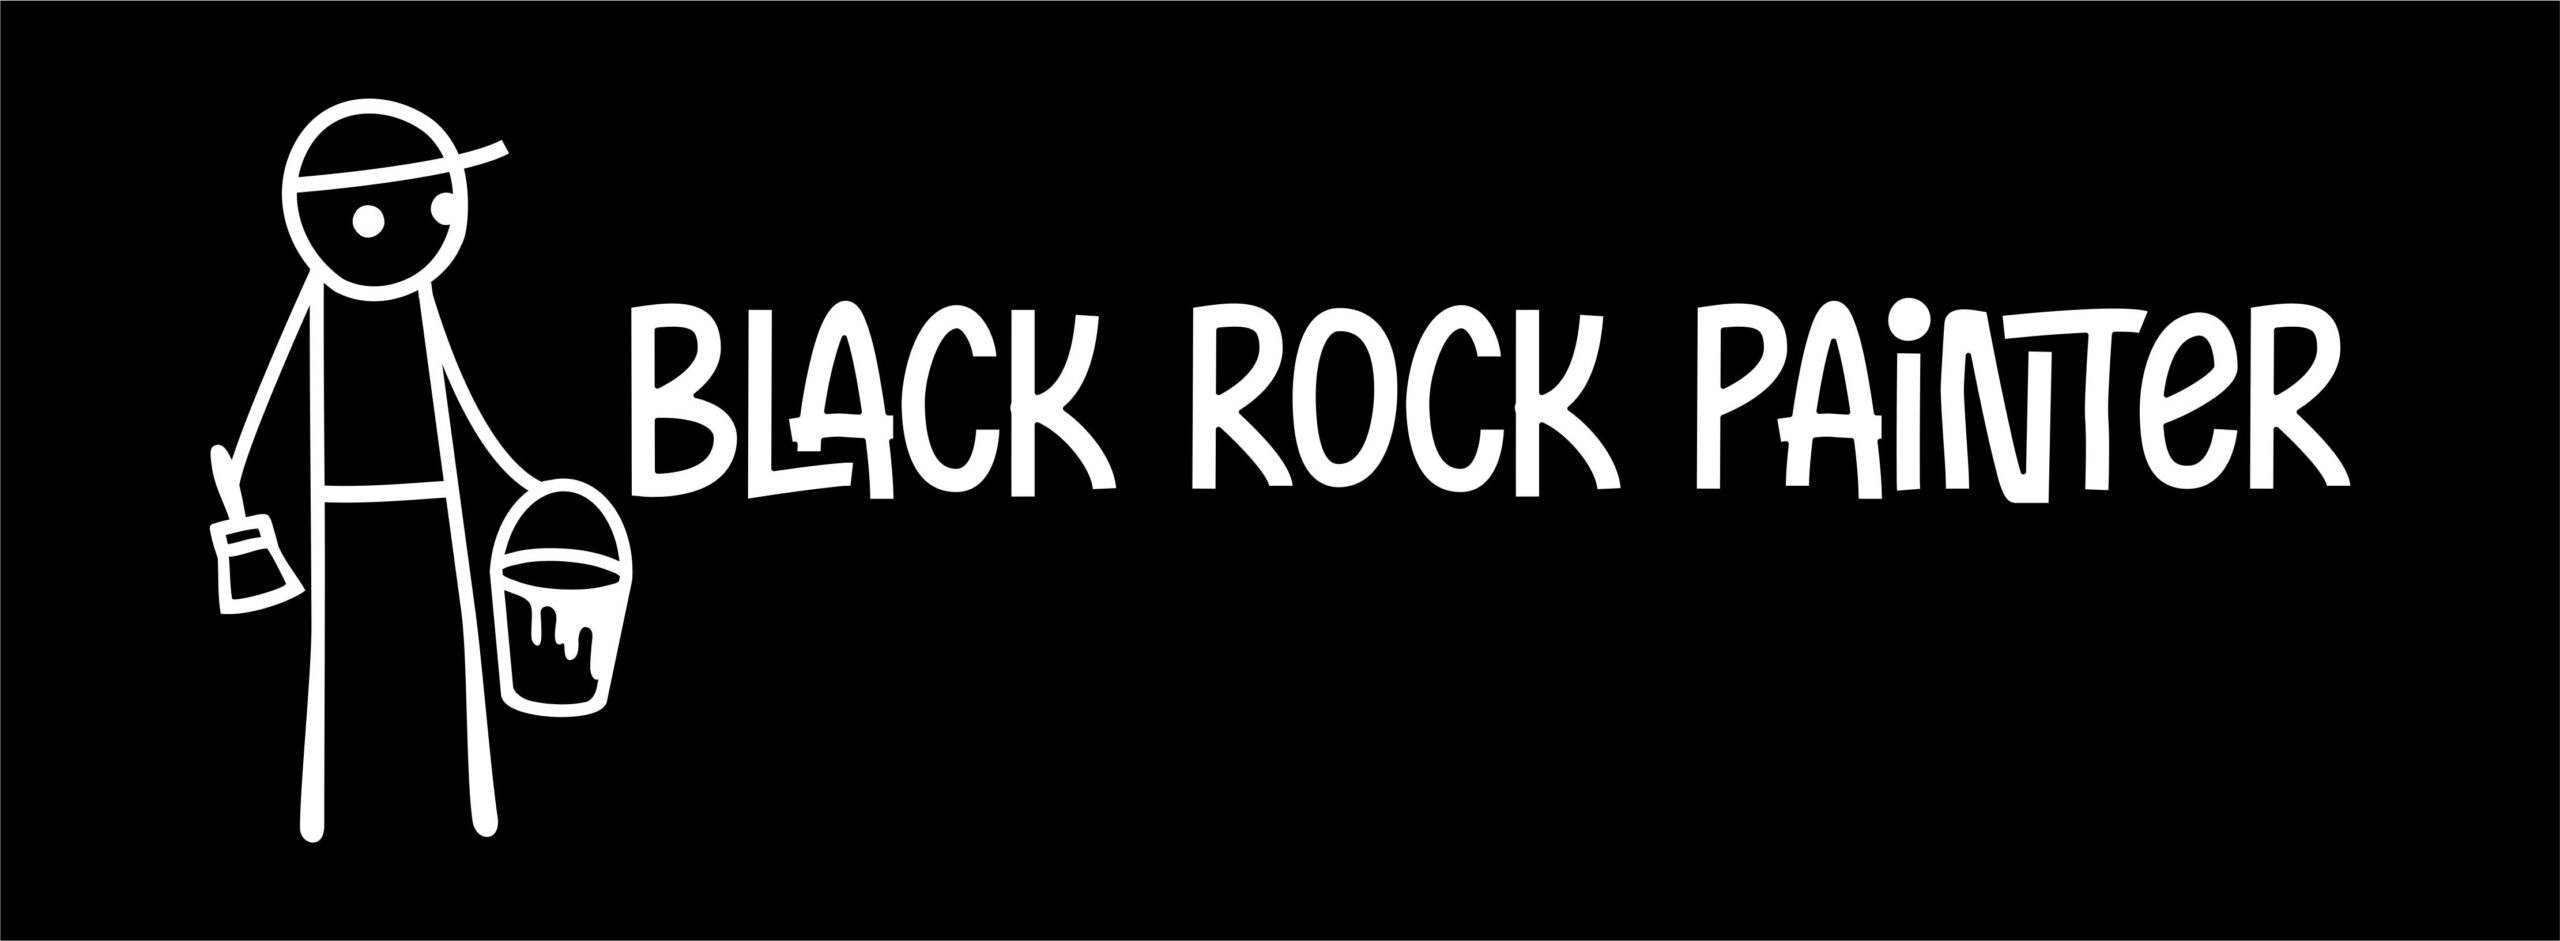 Black Rock Painter